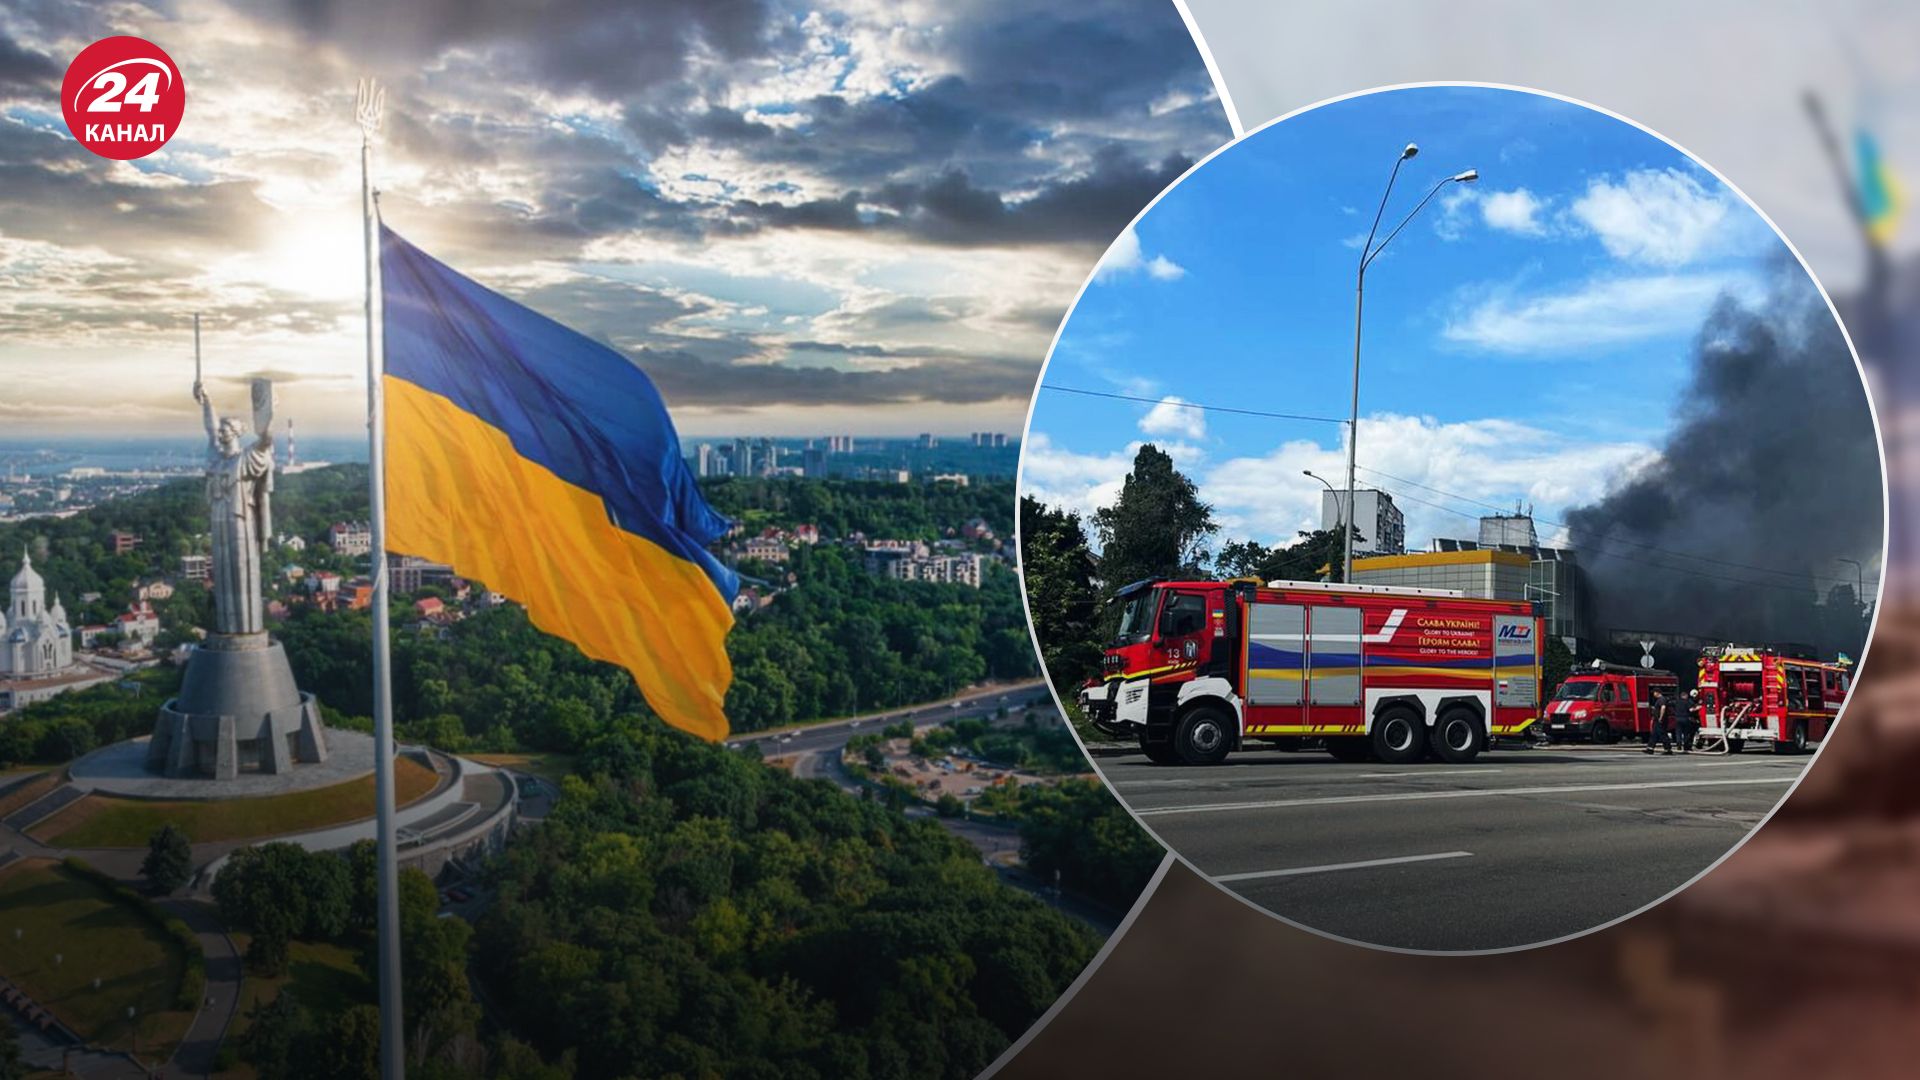 У Києві сталася масштабна пожежа